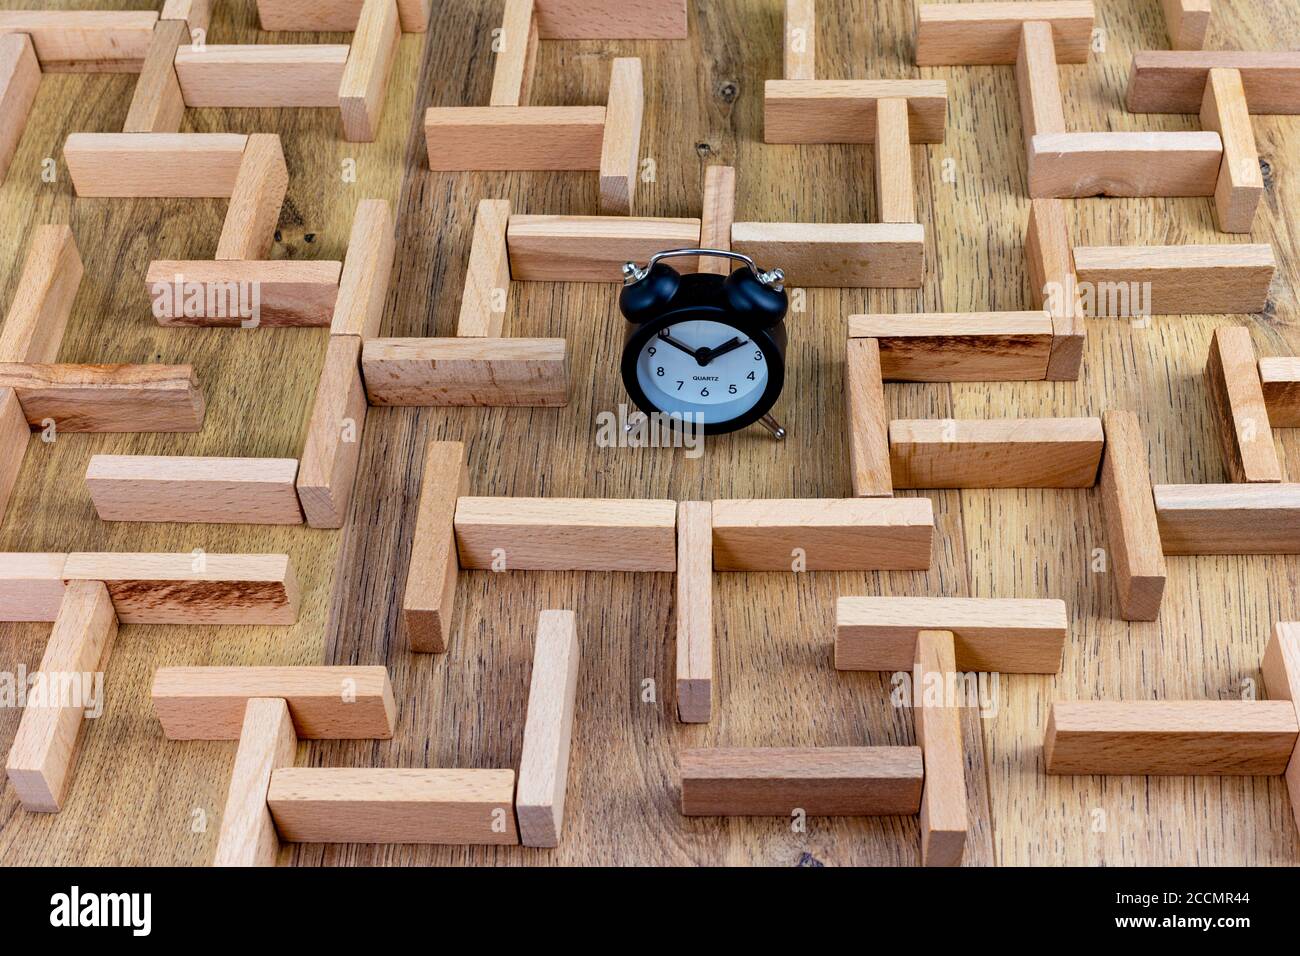 concetto di business, modello in labirinto di legno con orologio al centro Foto Stock